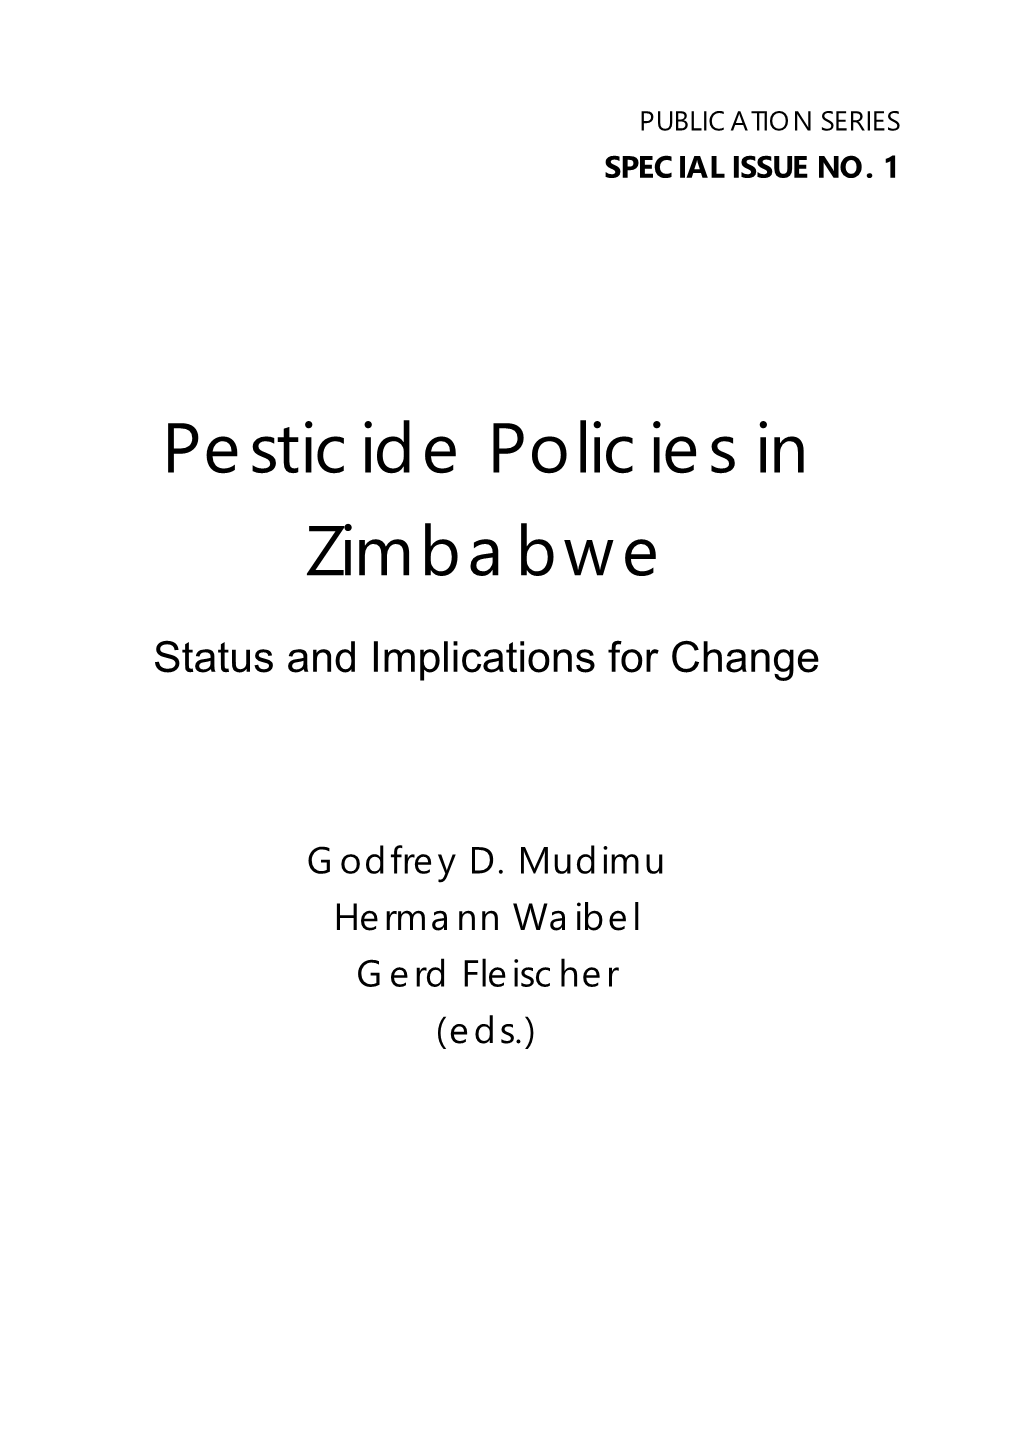 Special Issue Publication Series, No. 1 Pesticide Policy Project Publication Series Special Issue No